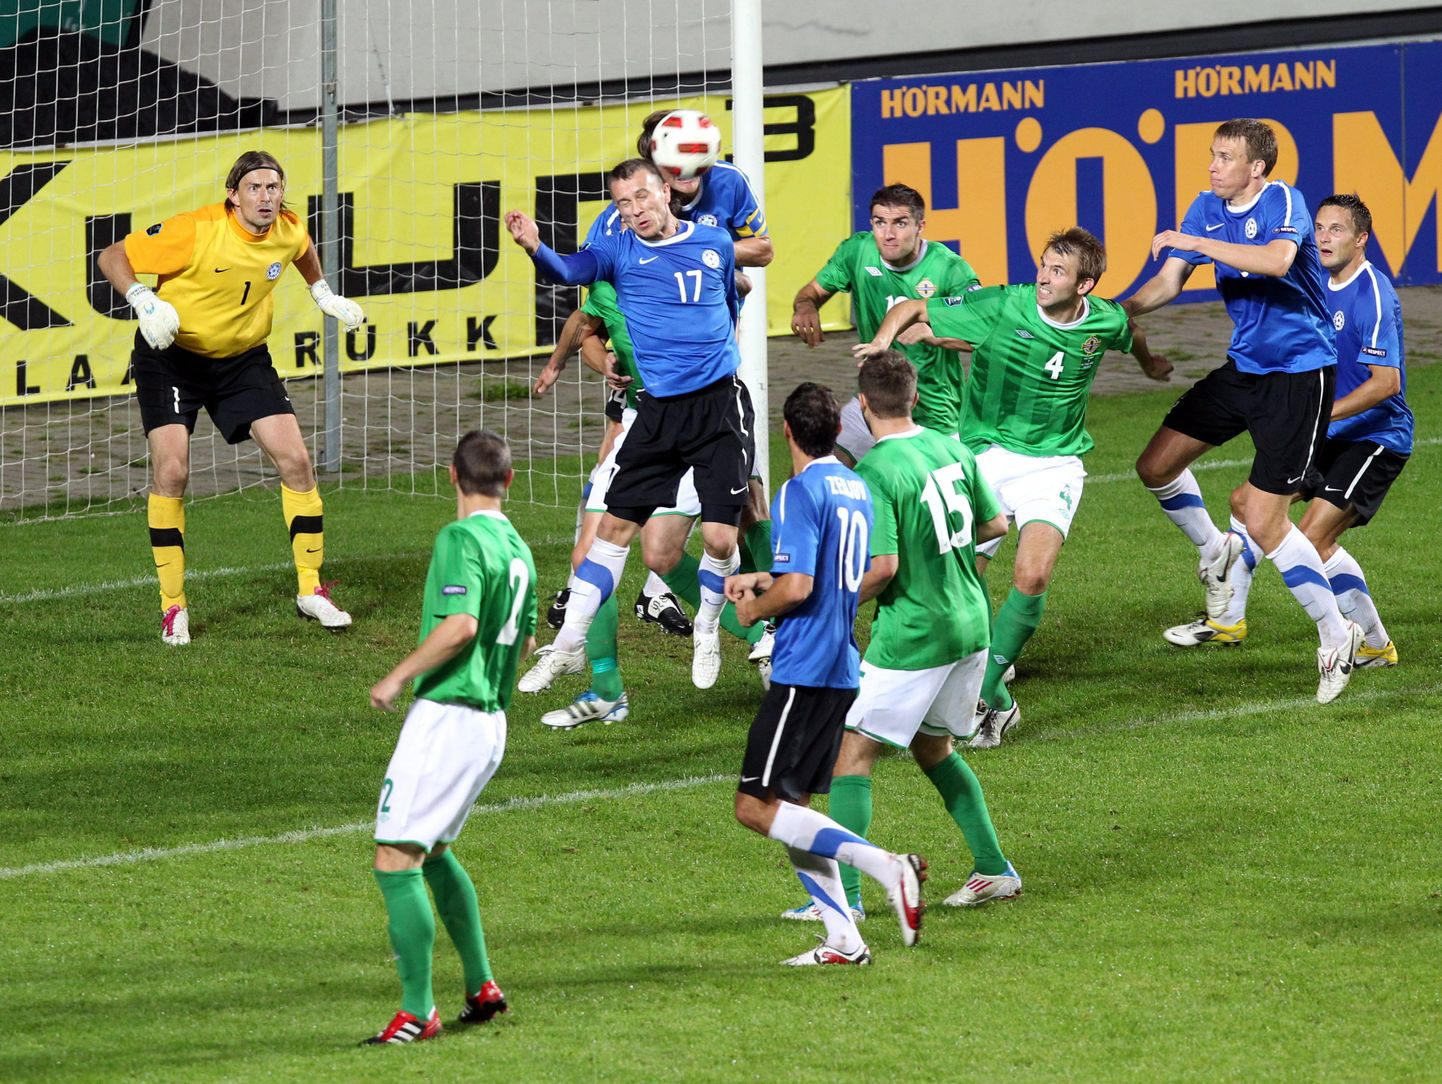 Eesti jalgpallikoondis alistas EM-valikmängus Põhja-Iirimaa koduväljakul 4:1 ja võõrsil 2:1.